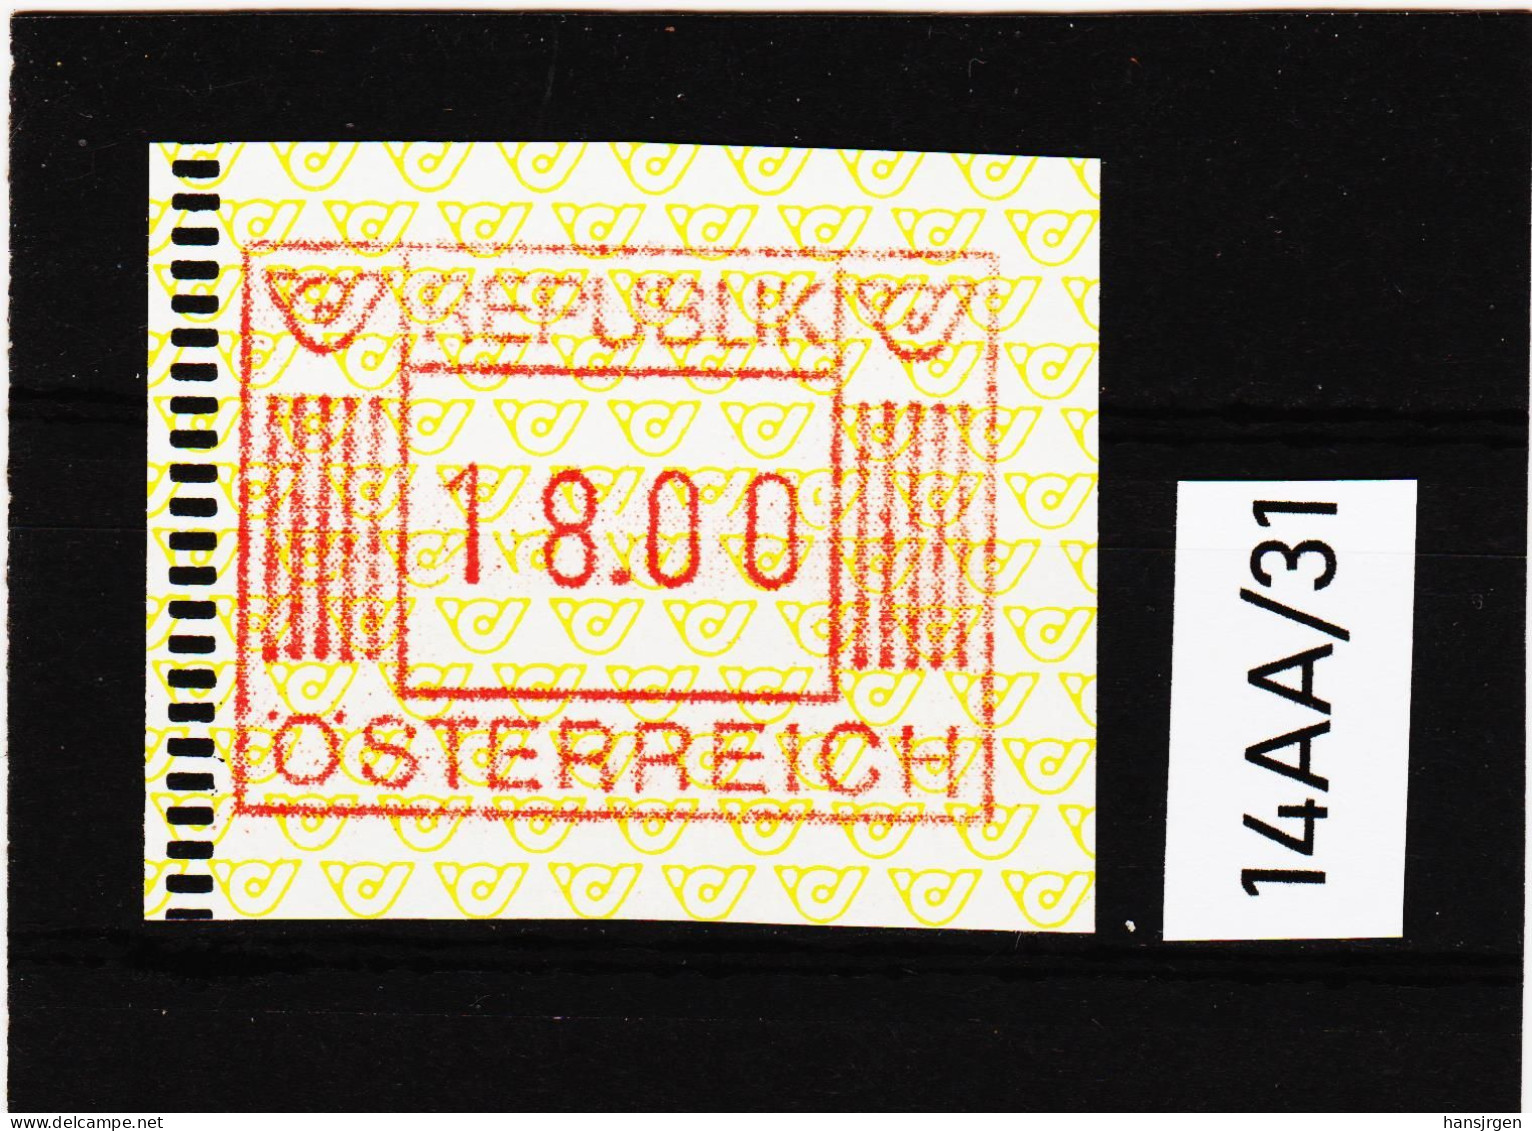 14AA/31  ÖSTERREICH 1983 AUTOMATENMARKEN 1. AUSGABE  18,00 SCHILLING   ** Postfrisch - Automatenmarken [ATM]